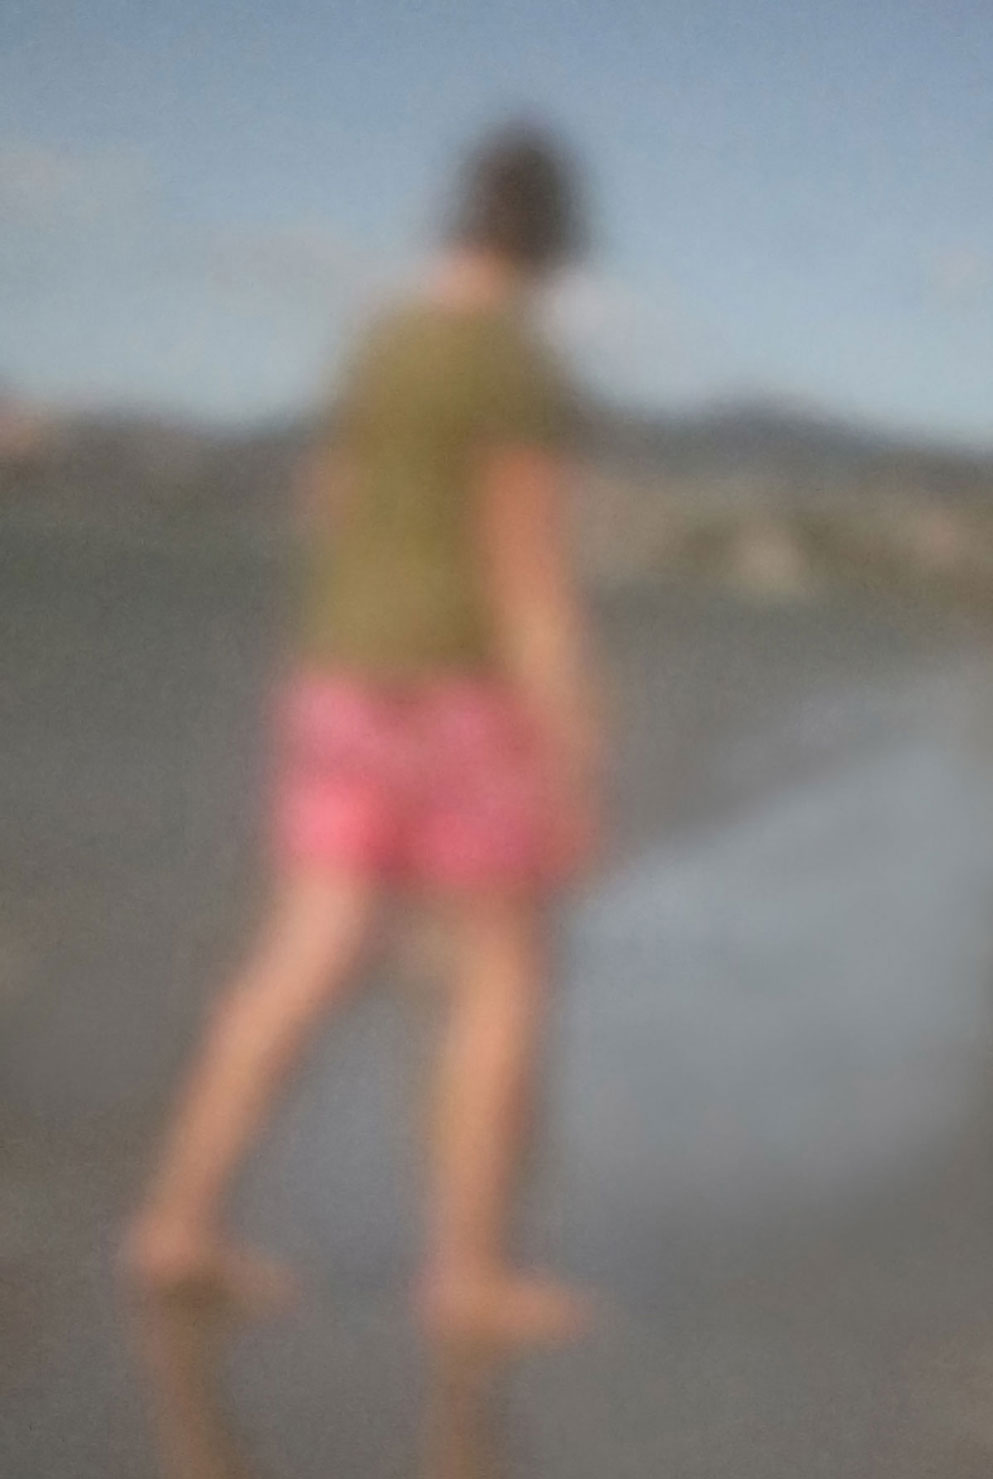 17 „Frau am Strand“, 2020, Neuseeland, Camera Obscura, Pigmentdruck auf Alu-Dibond